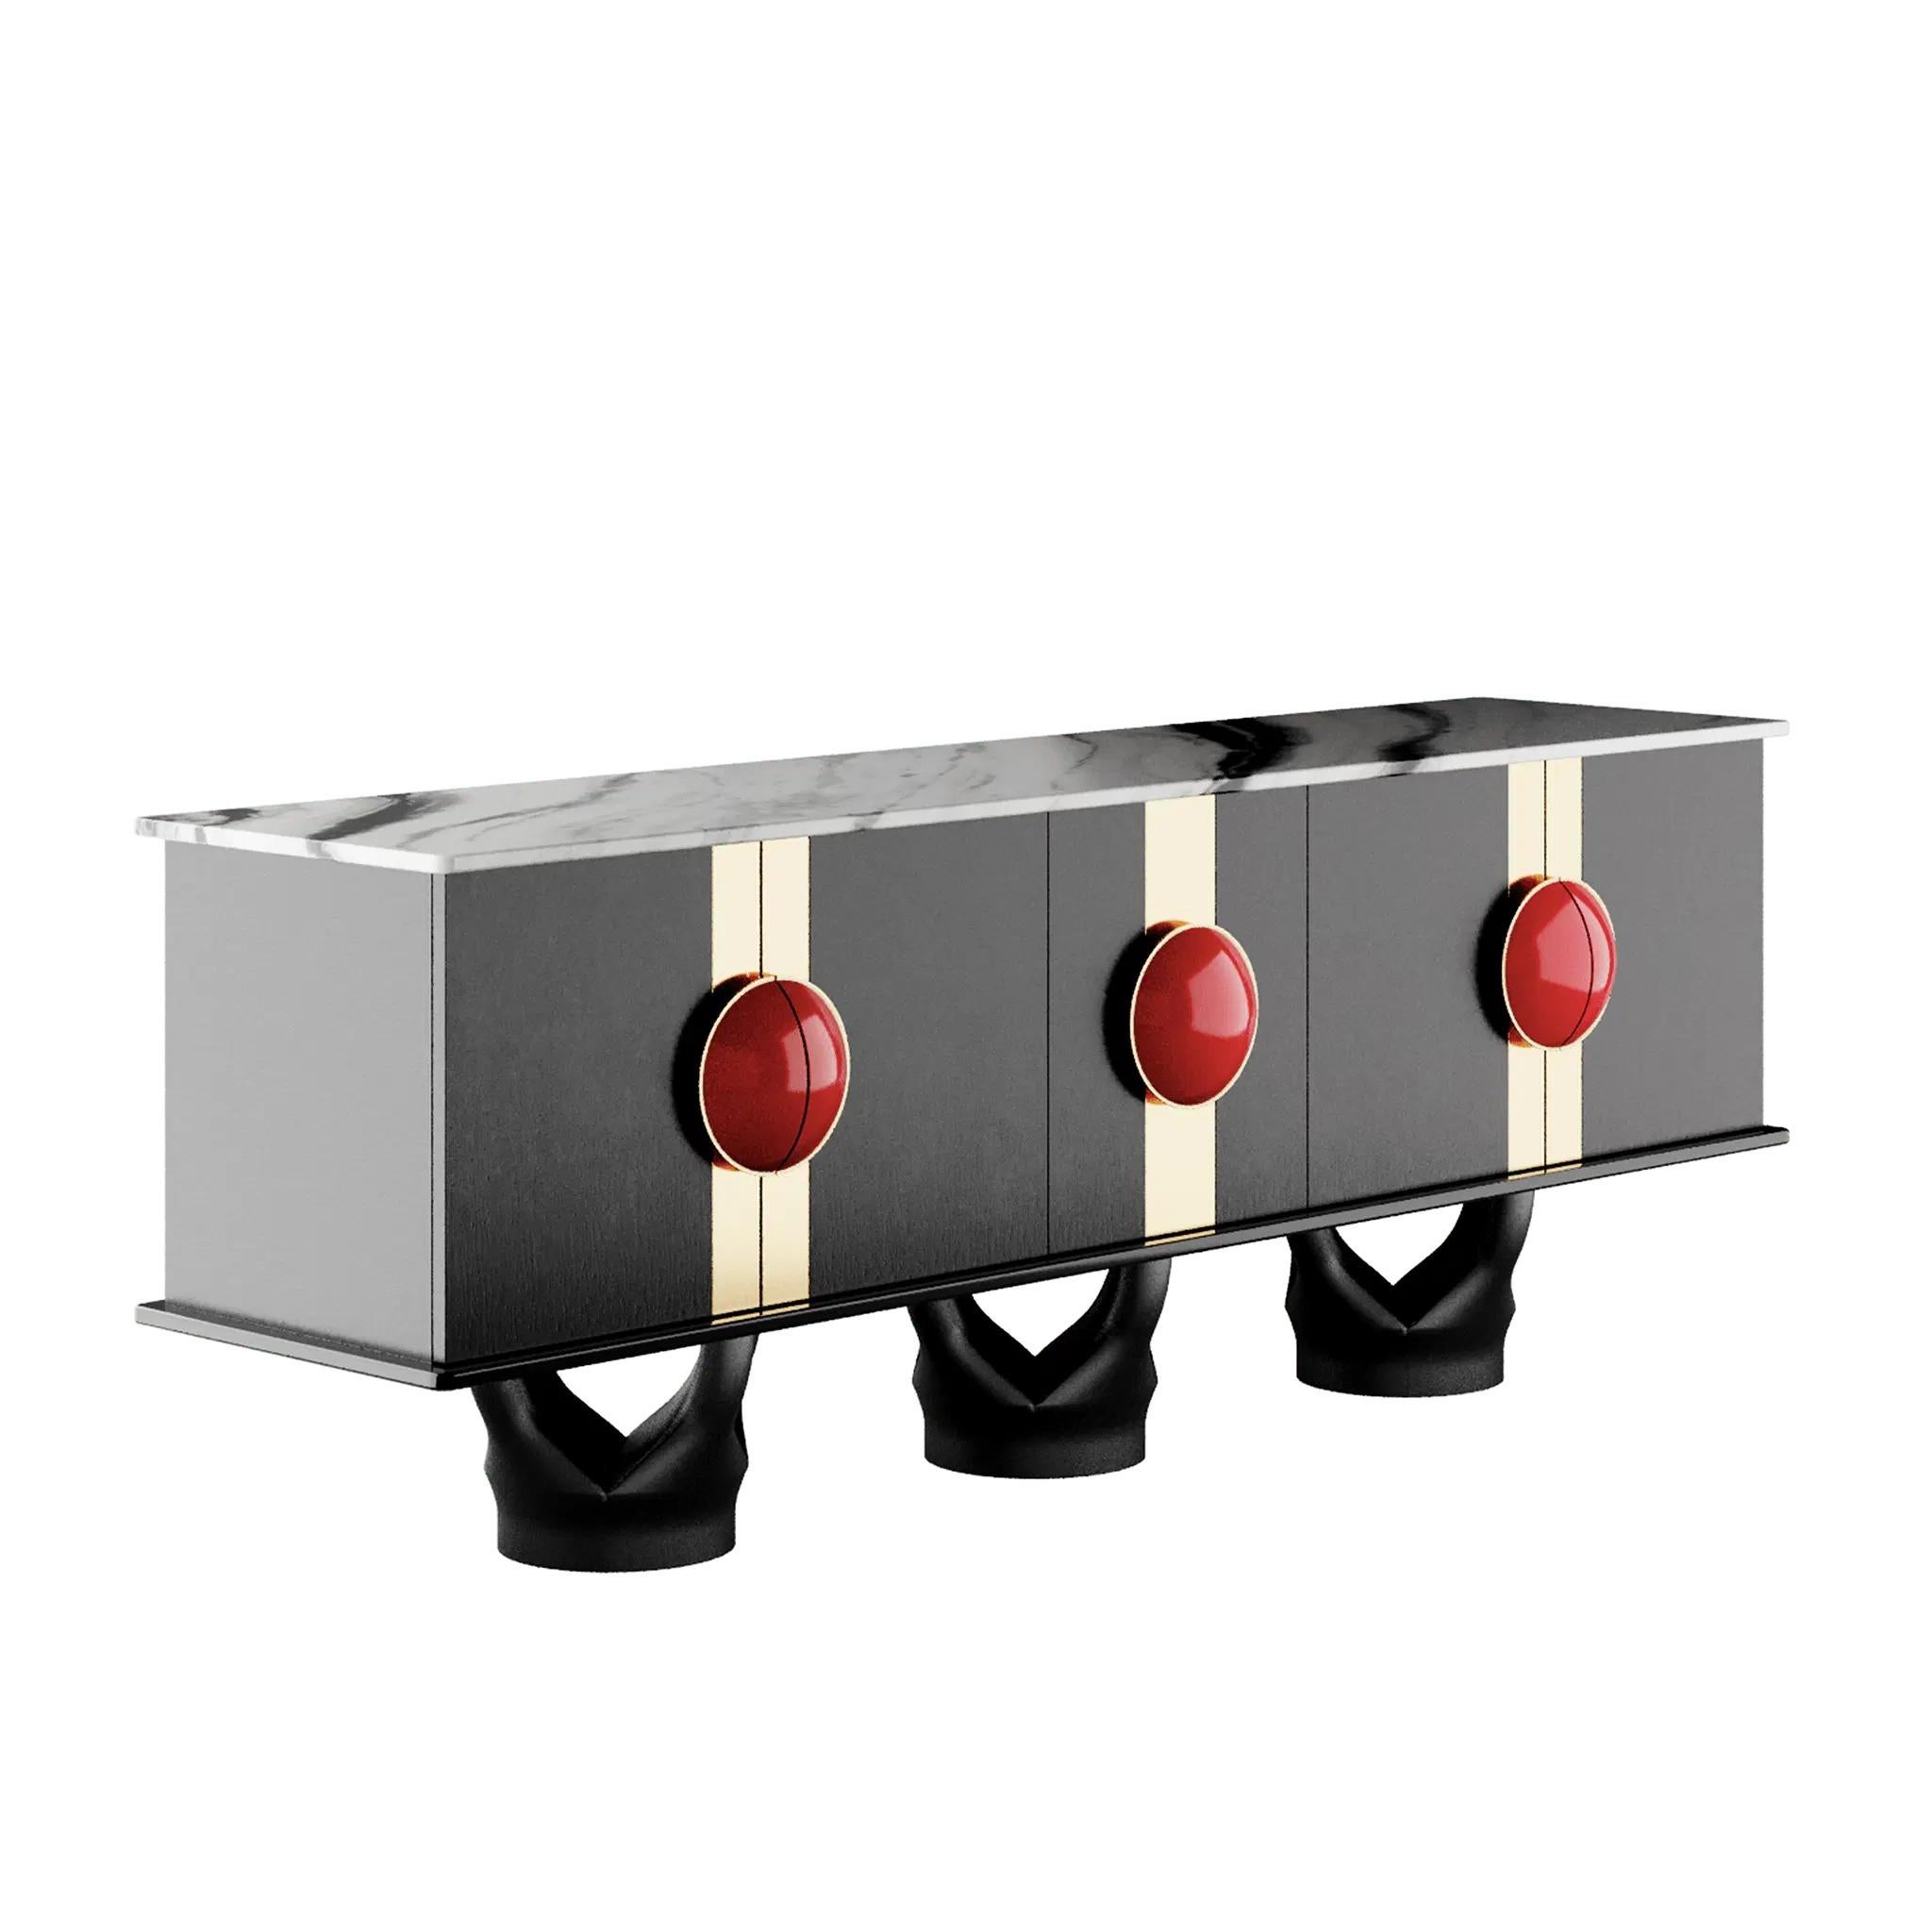 Limitierte Auflage: Das Art Deco Marino Sideboard ist ein exklusives Möbelstück für ein zeitgenössisches Einrichtungsprojekt. Ein modernes Sideboard mit einzigartigen Formen ist der Joker für Ihr Einrichtungsprojekt.

MATERIALIEN: Platte aus